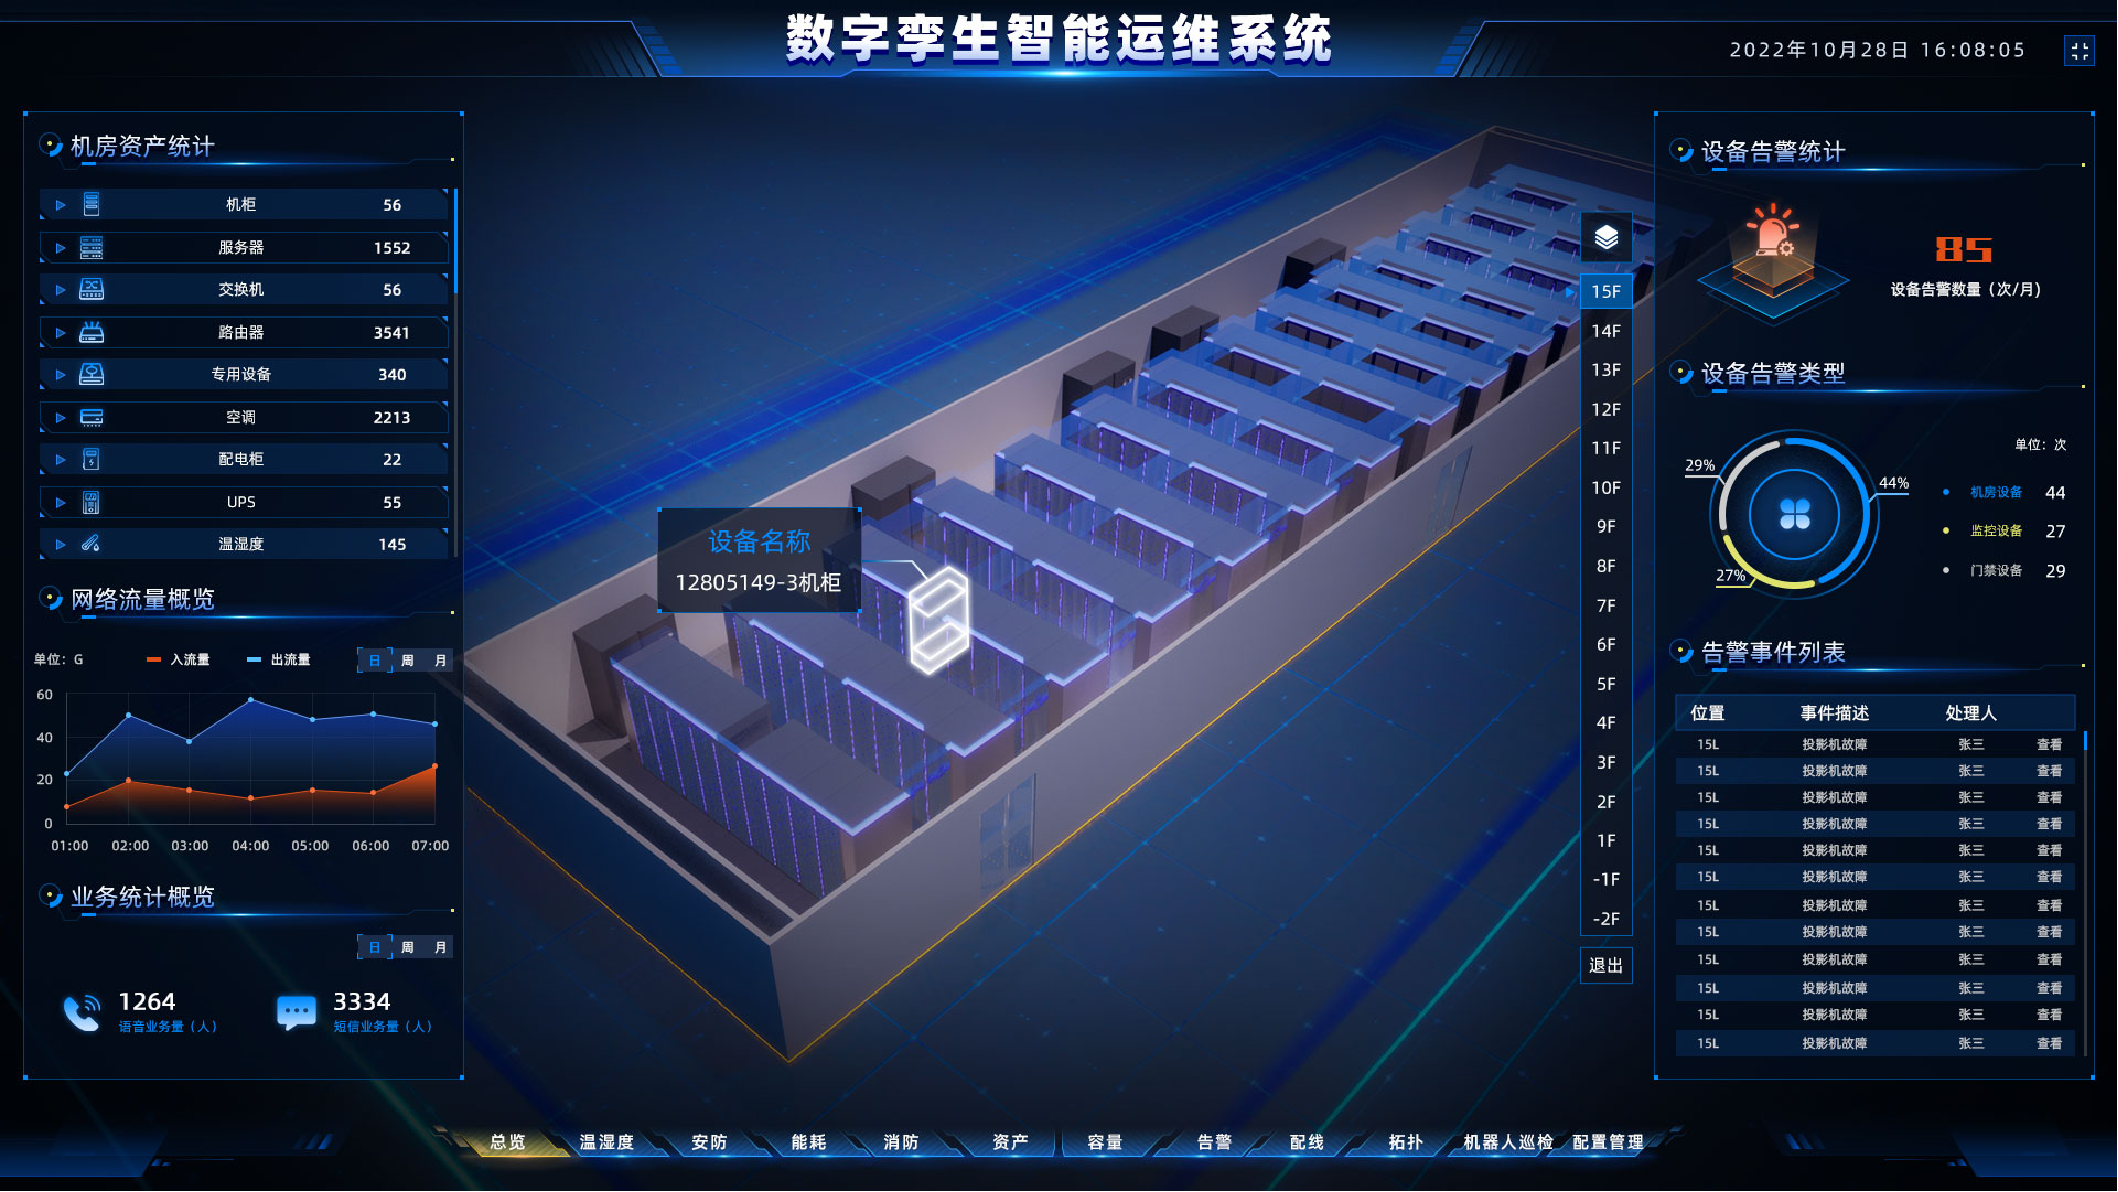 北京市某所数字孪生智能运维系统